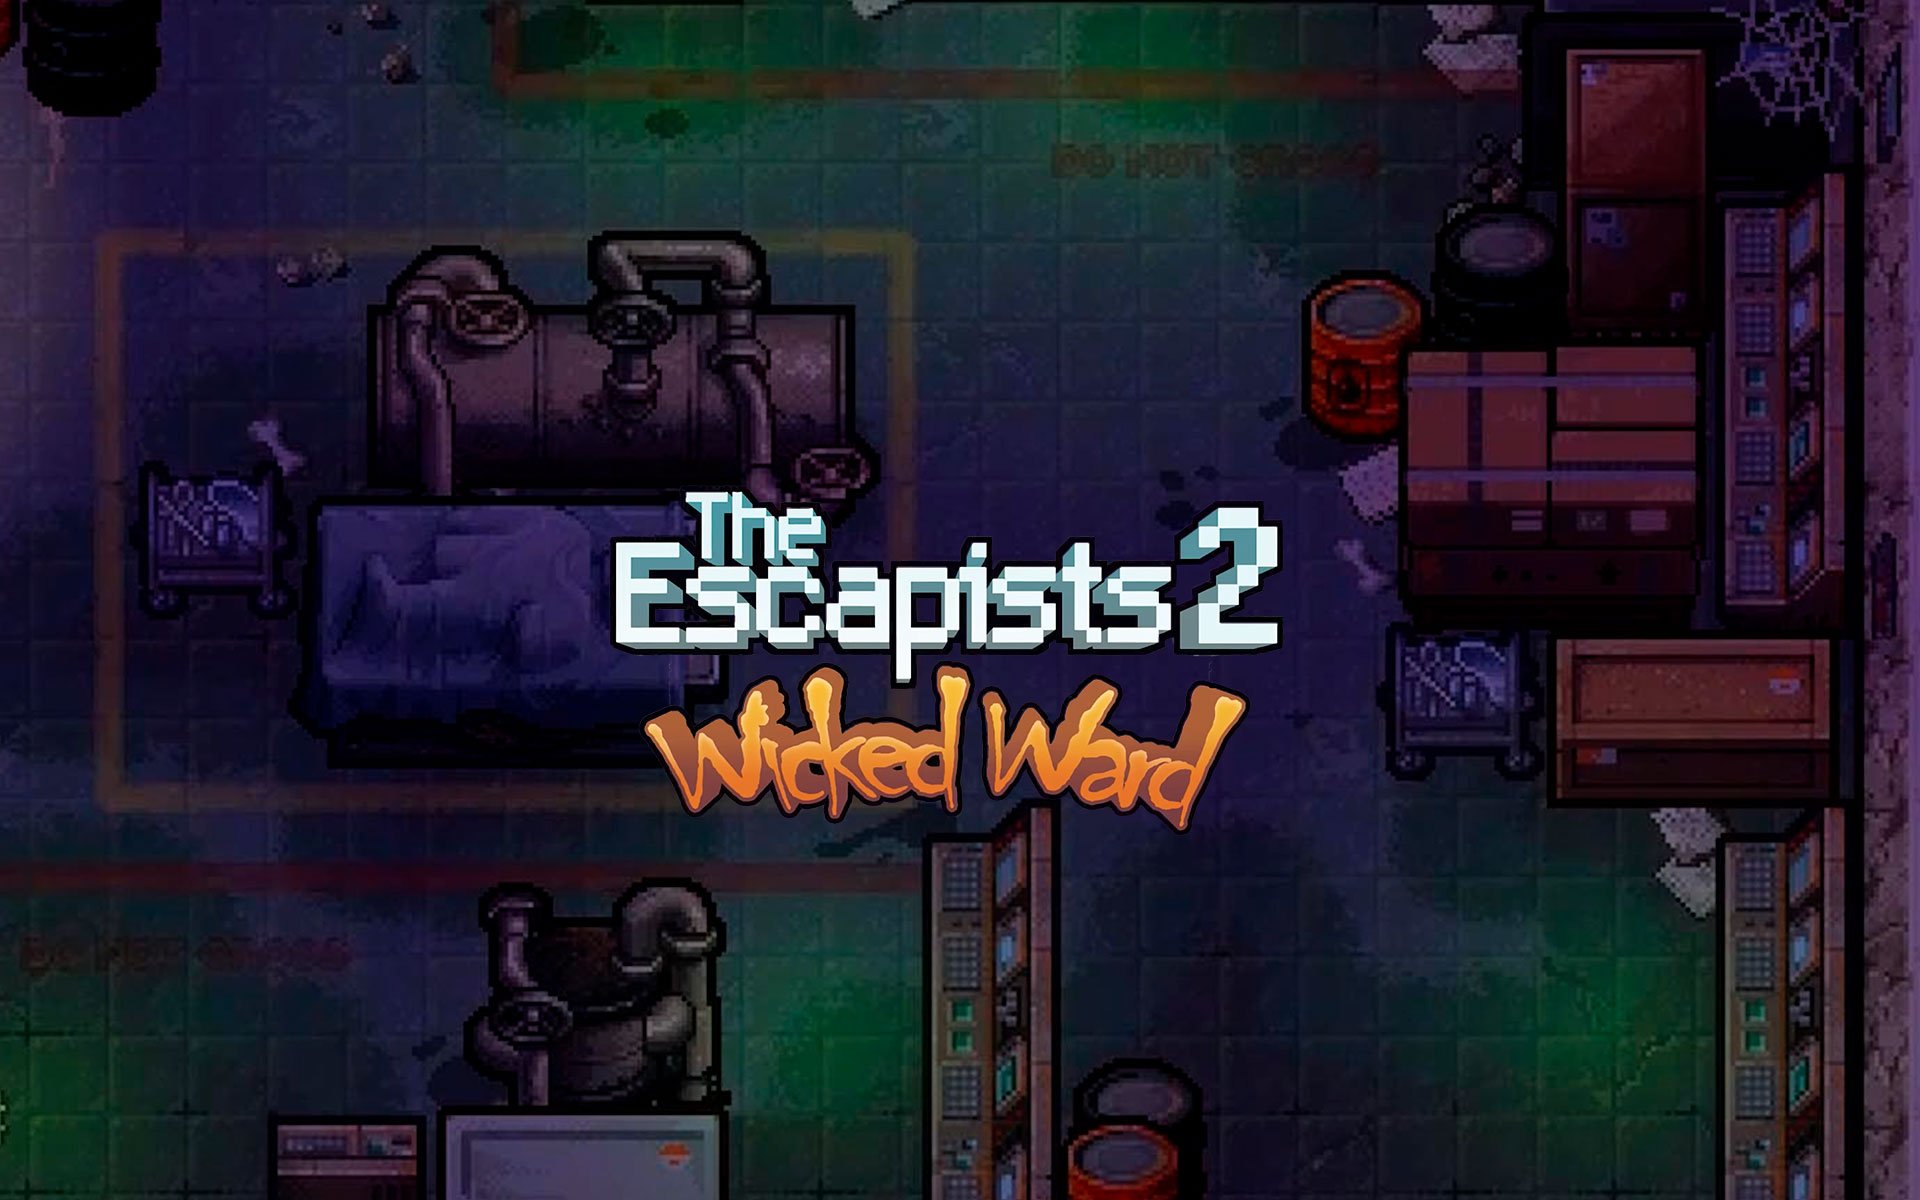 The Escapists 2 - Wicked Ward (DLC) por R$ 8.39